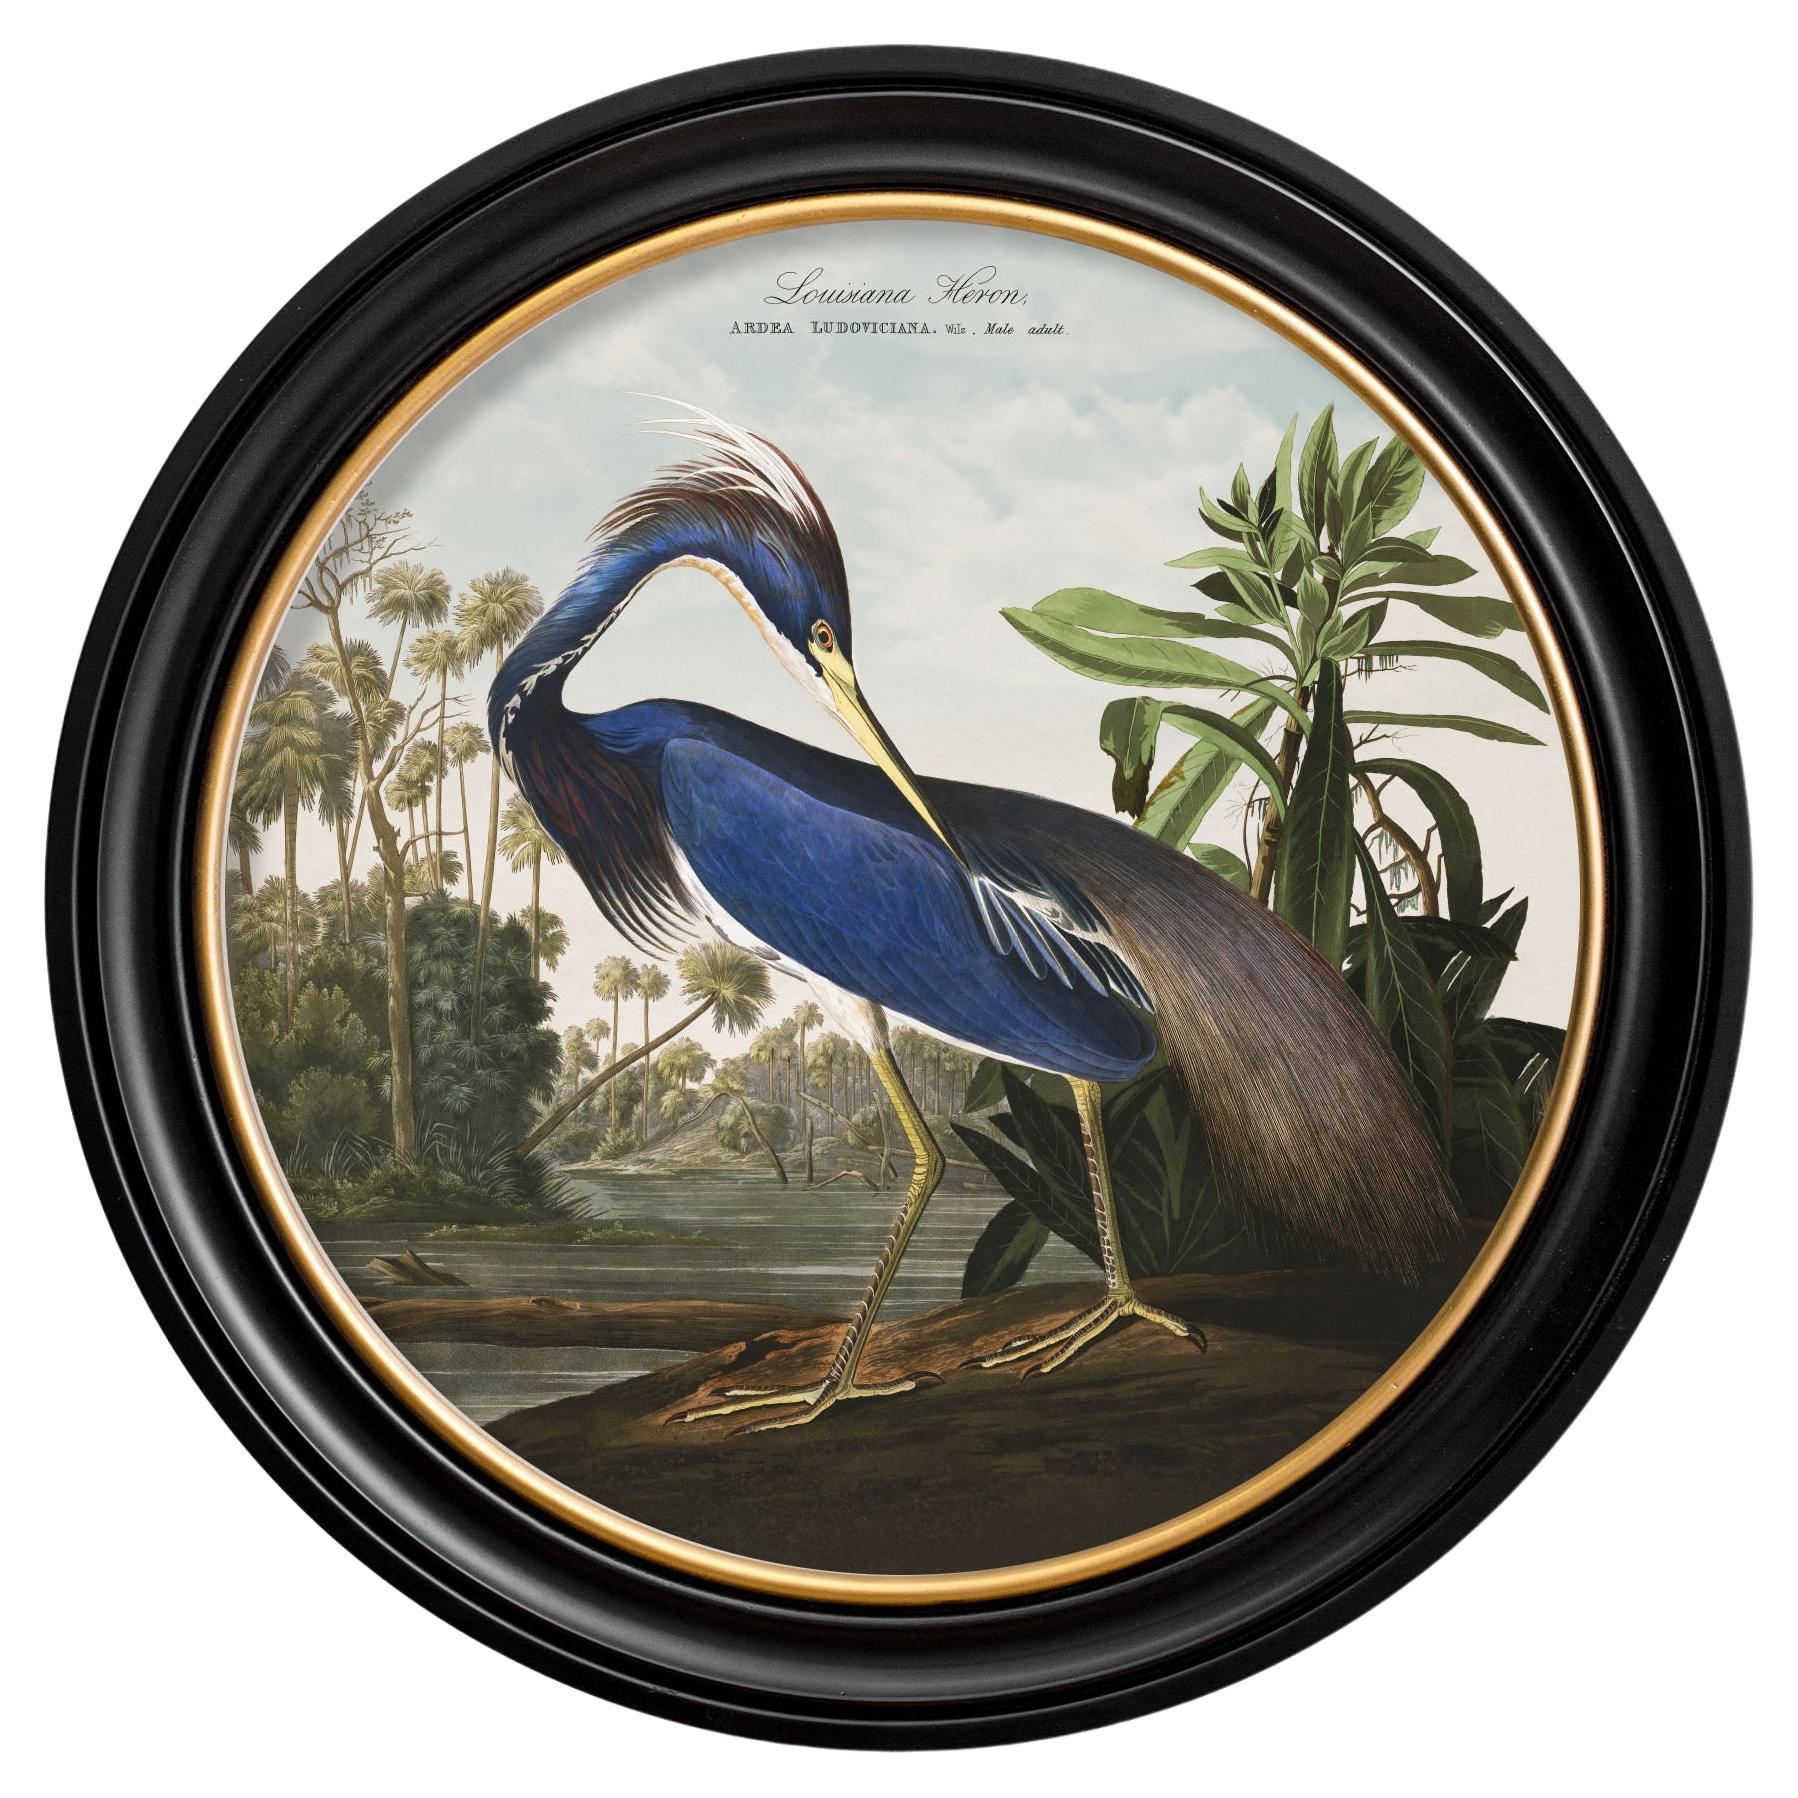 Impression héron Louisiane de Louisiane de Audubon's Birds of America C1838 dans un cadre rond, Nouveau